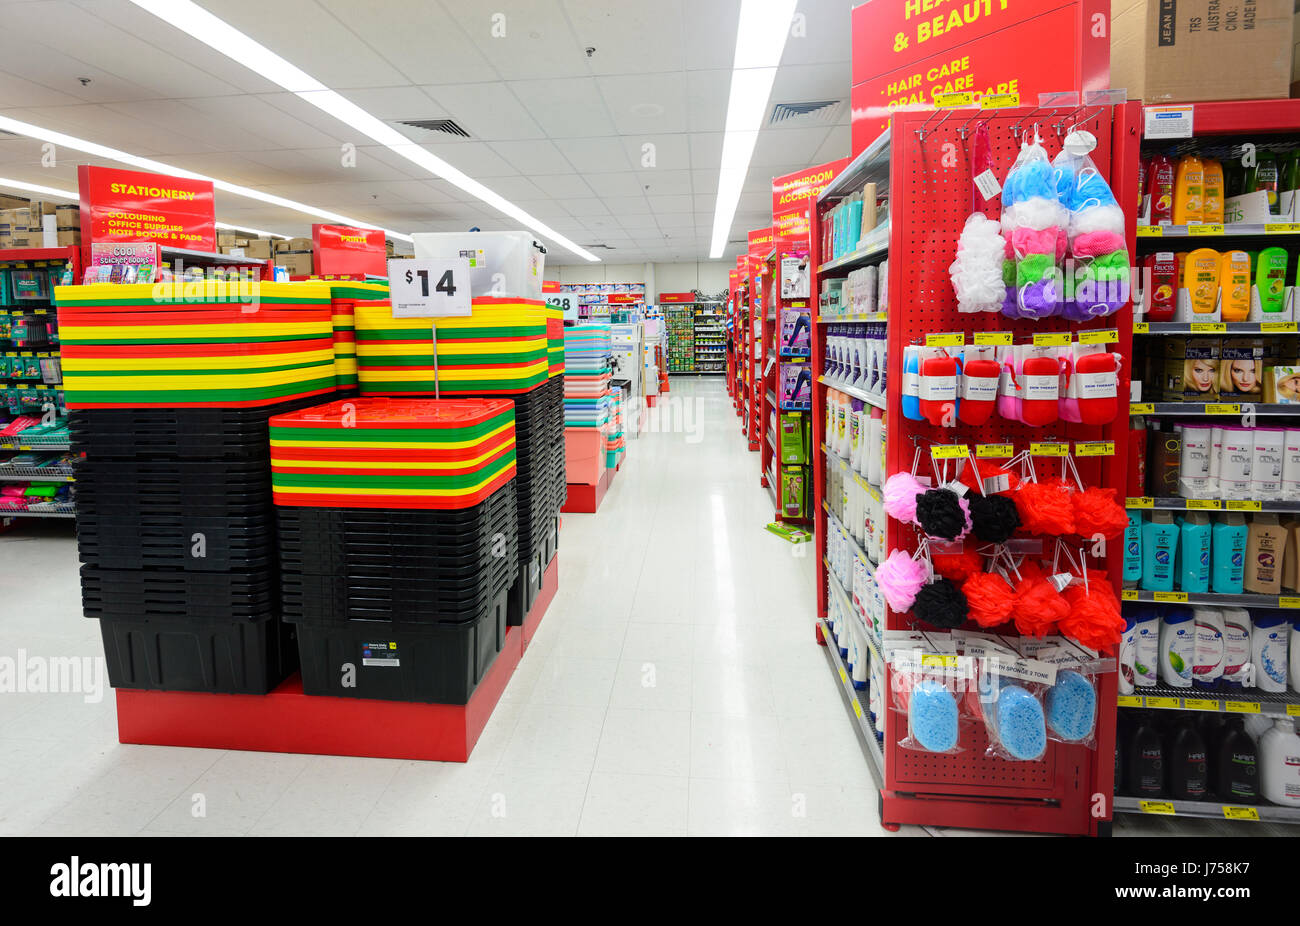 Les boîtes en plastique et de produits vendus à des prix réduits à la rejeter Shop, Kiama, New South Wales, NSW, Australie Banque D'Images